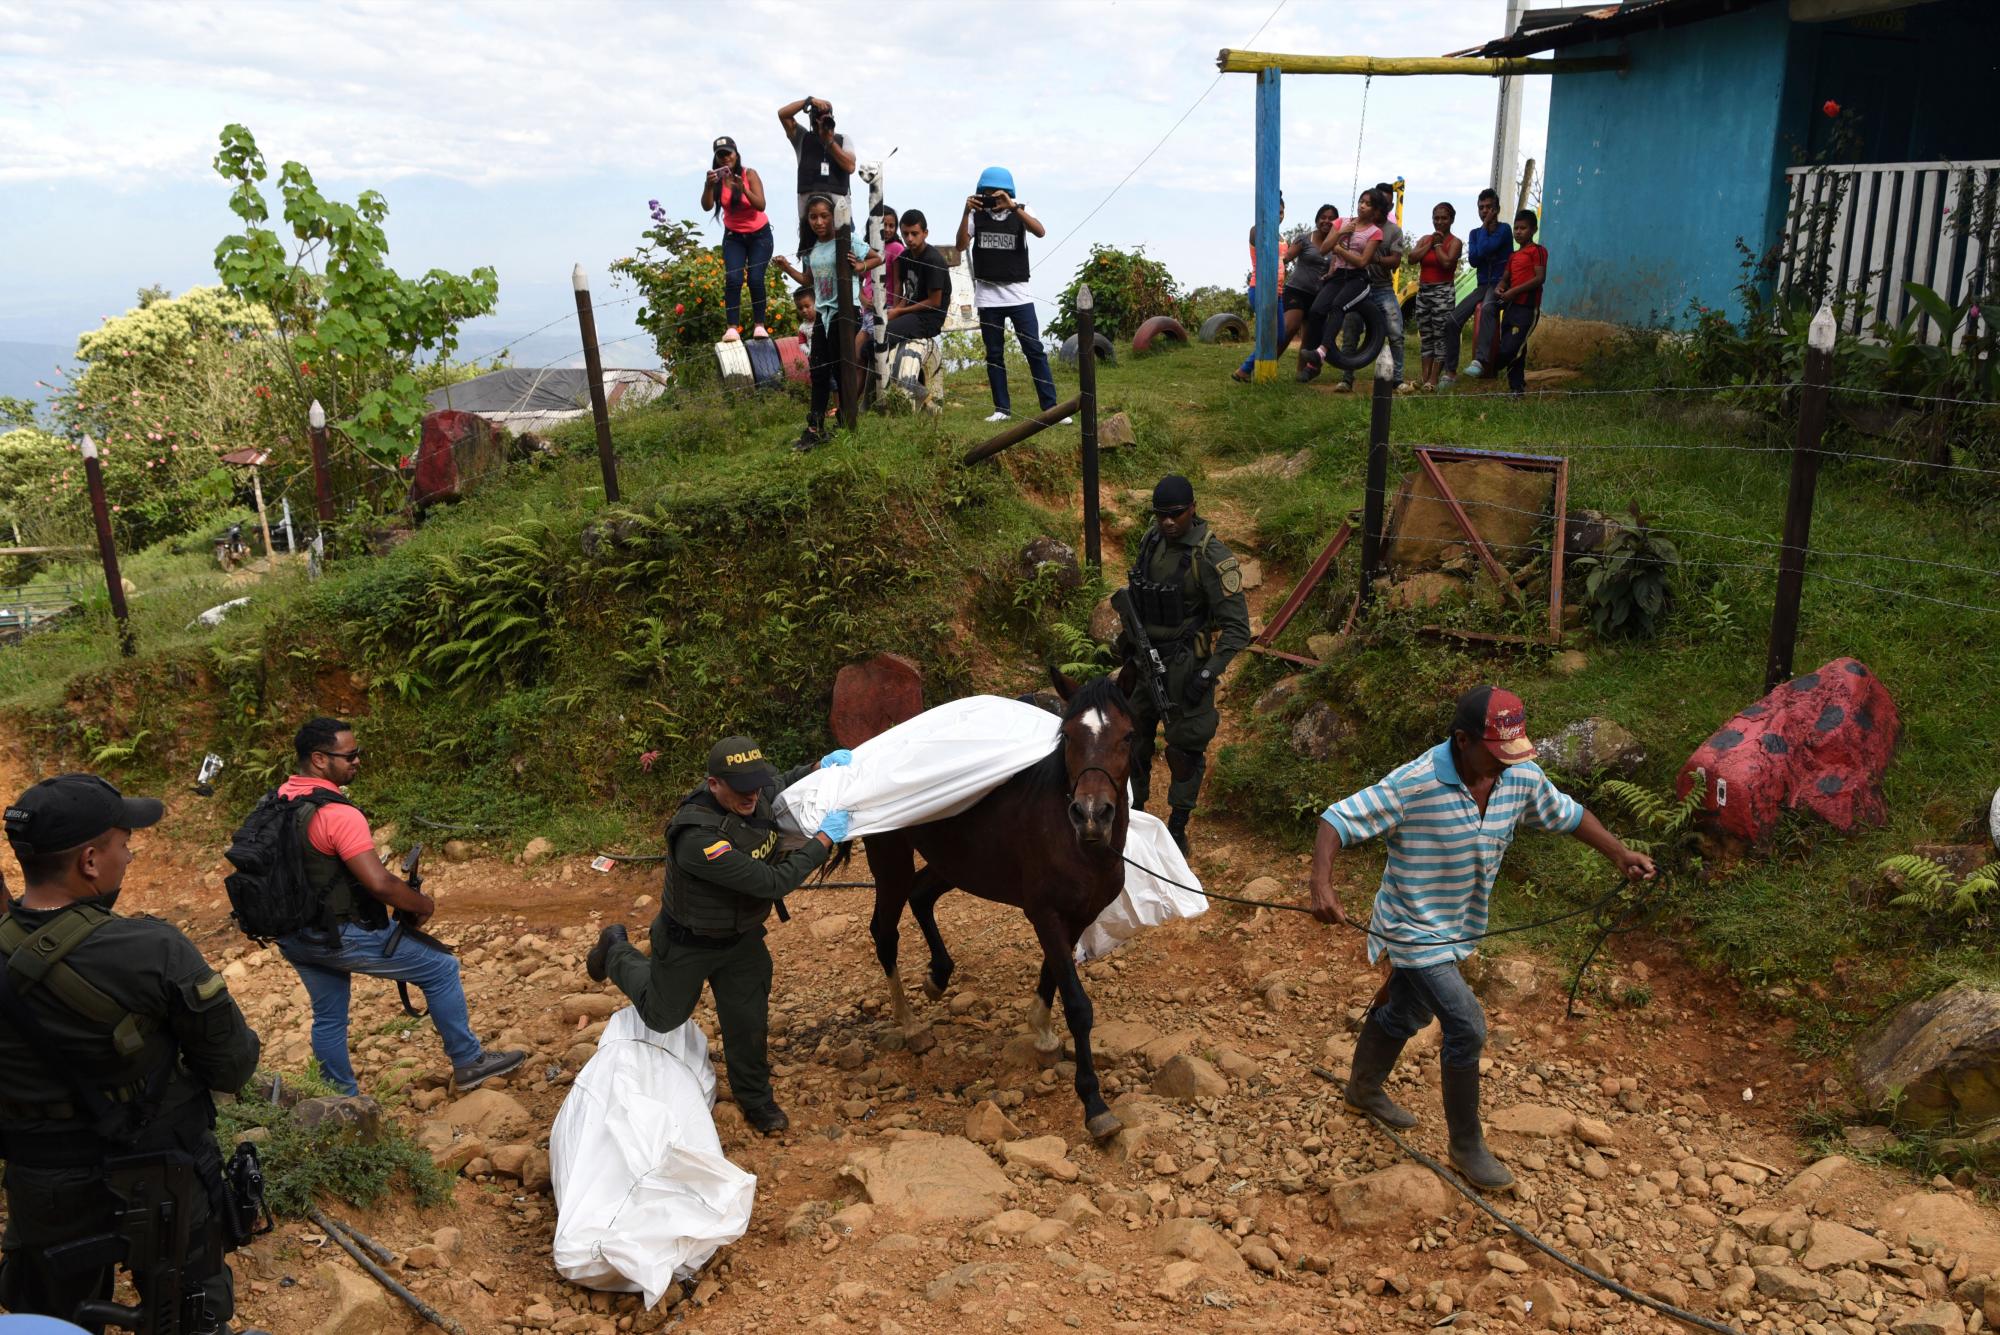 En esta imagen, tomada el 17 de enero de 2020, un agente de la policía ayuda a trasladar el cadáver de uno de los al menos cinco fallecidos en una escaramuza entre grupos ilegales armados, en Jamundi, Colombia. Según las autoridades, rebeldes de las antiguas Fuerzas Armadas Revolucionarias de Colombia (FARC) operan en la zona y podrían haber estado implicados. (AP Foto/Christian Escobar Mora)